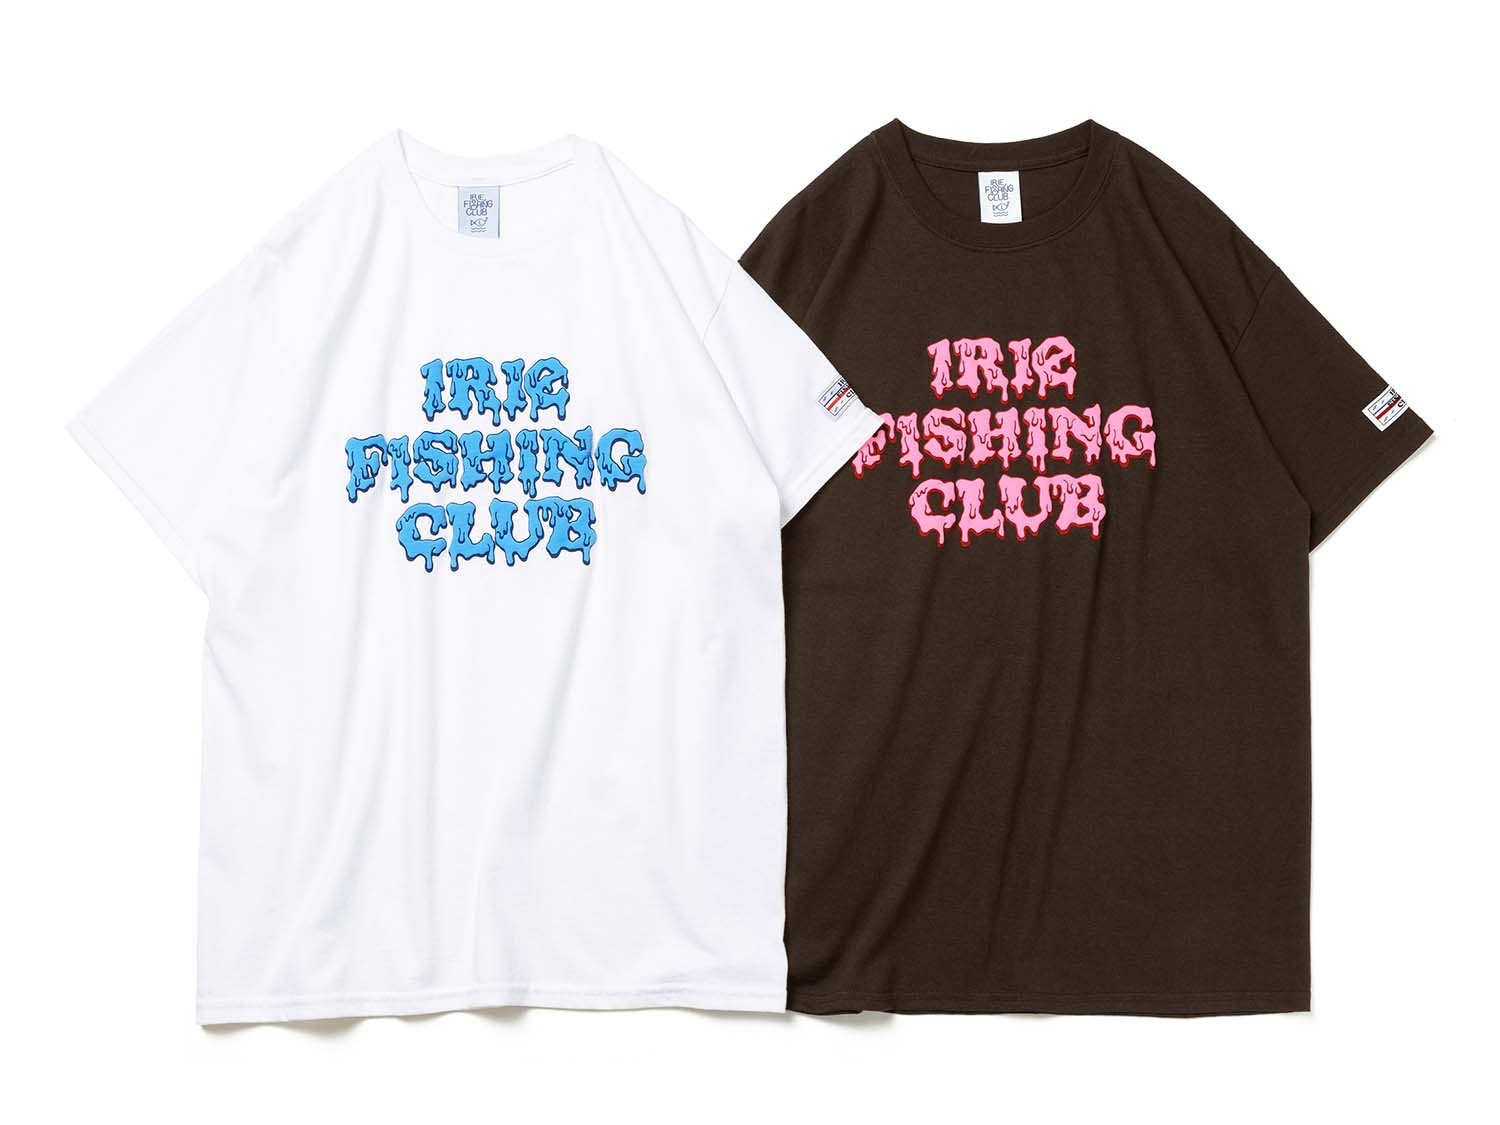 IRIE FISHING CLUBの商品一覧 | RAGGACHINA